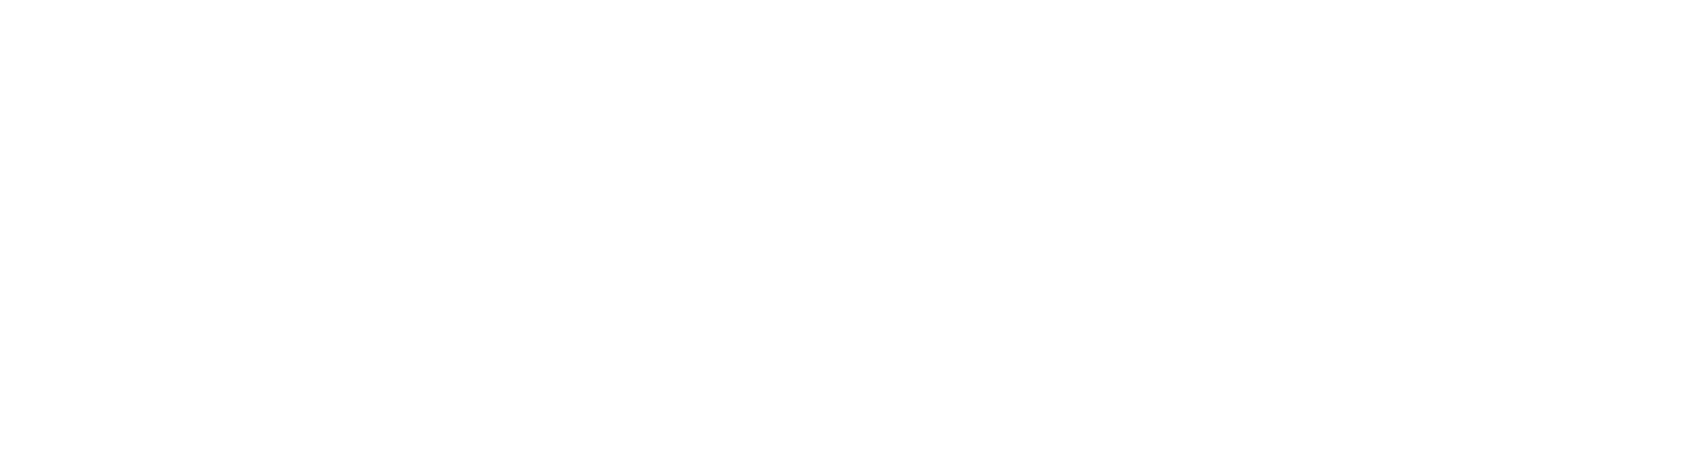 Buswerbung auf digitalen Displays - BusAds